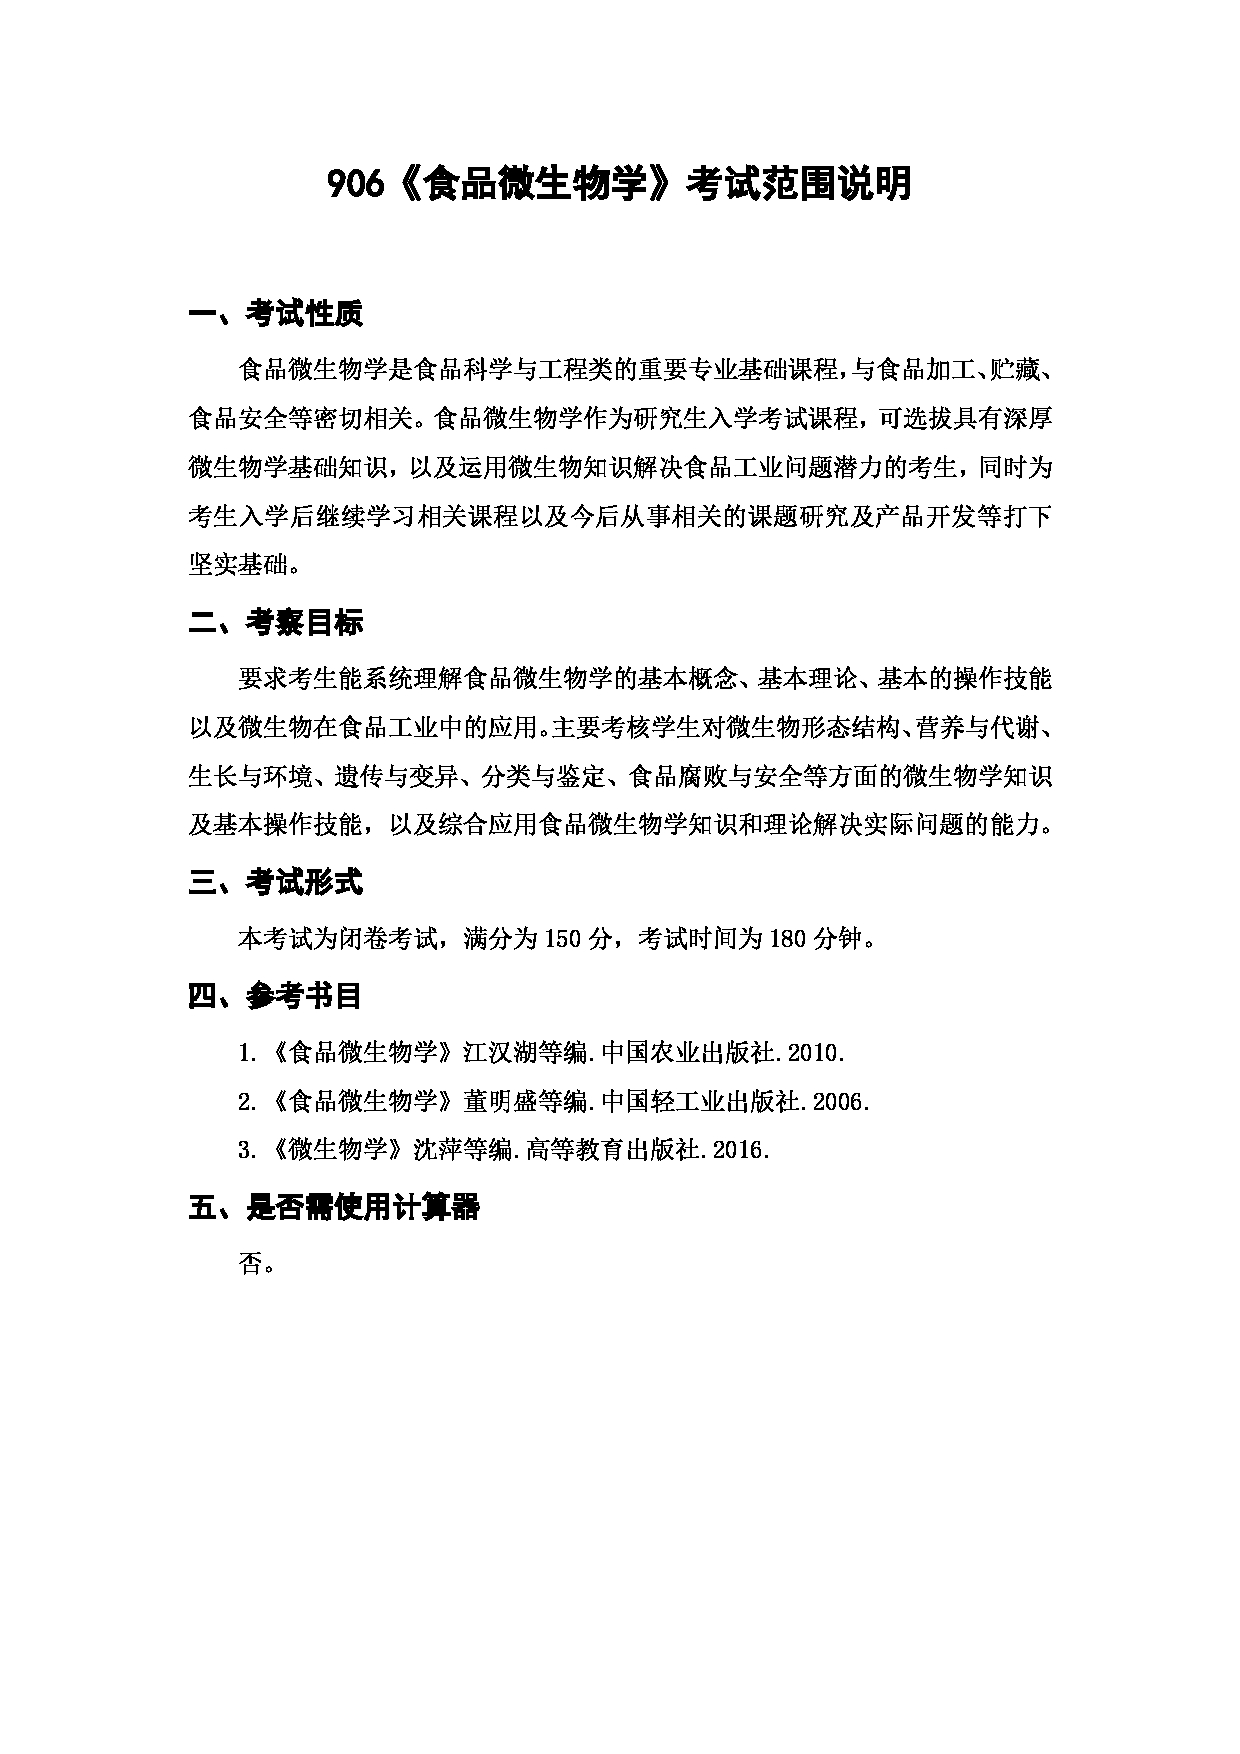 上海海洋大学2023年考研自命题科目 906《食品微生物学》 考试范围第1页